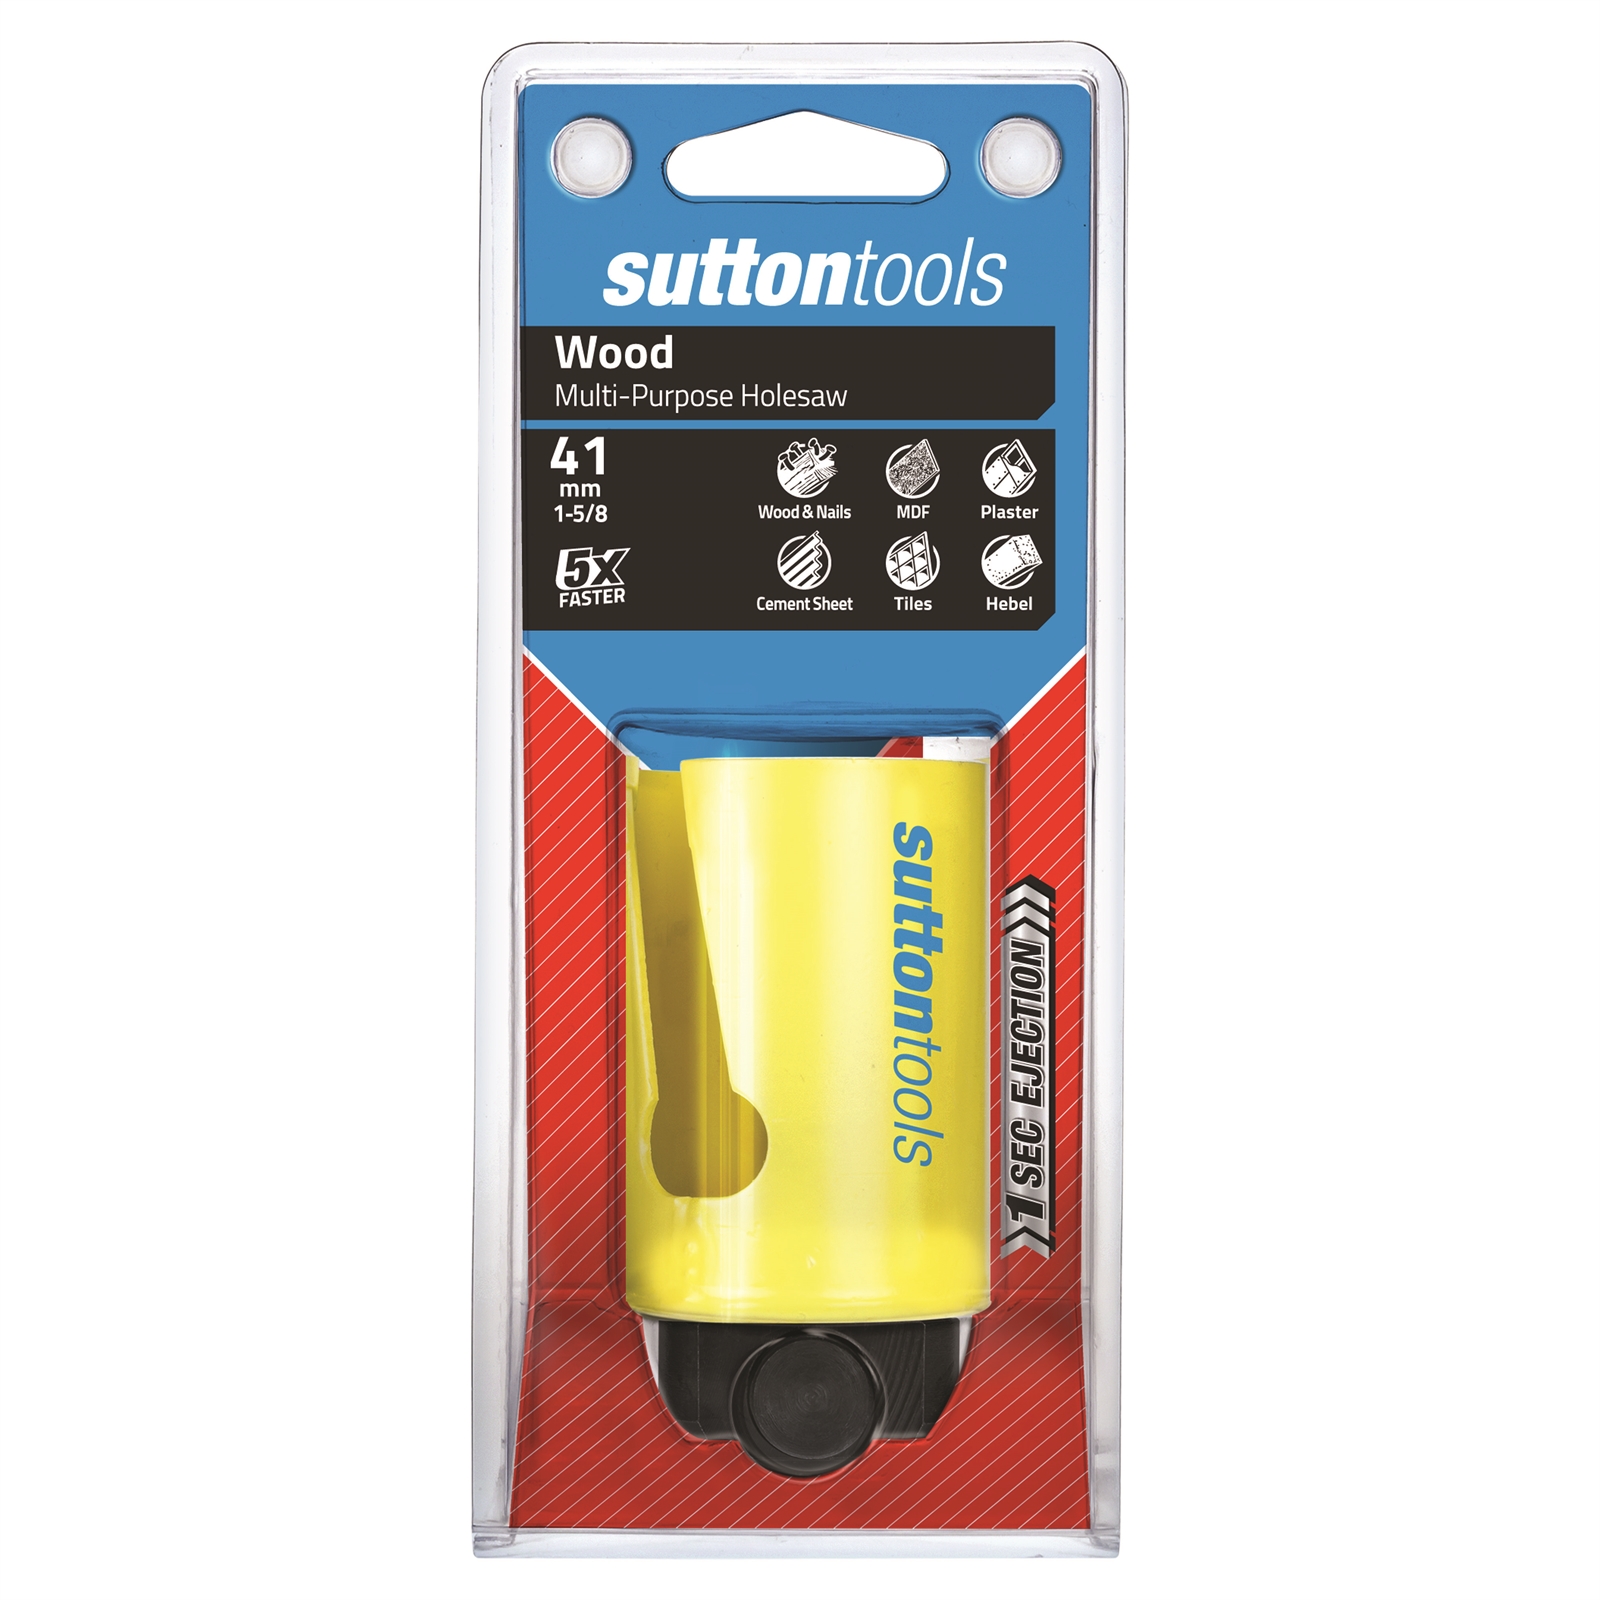 Sutton Tools 41mm Multipurpose Holesaw